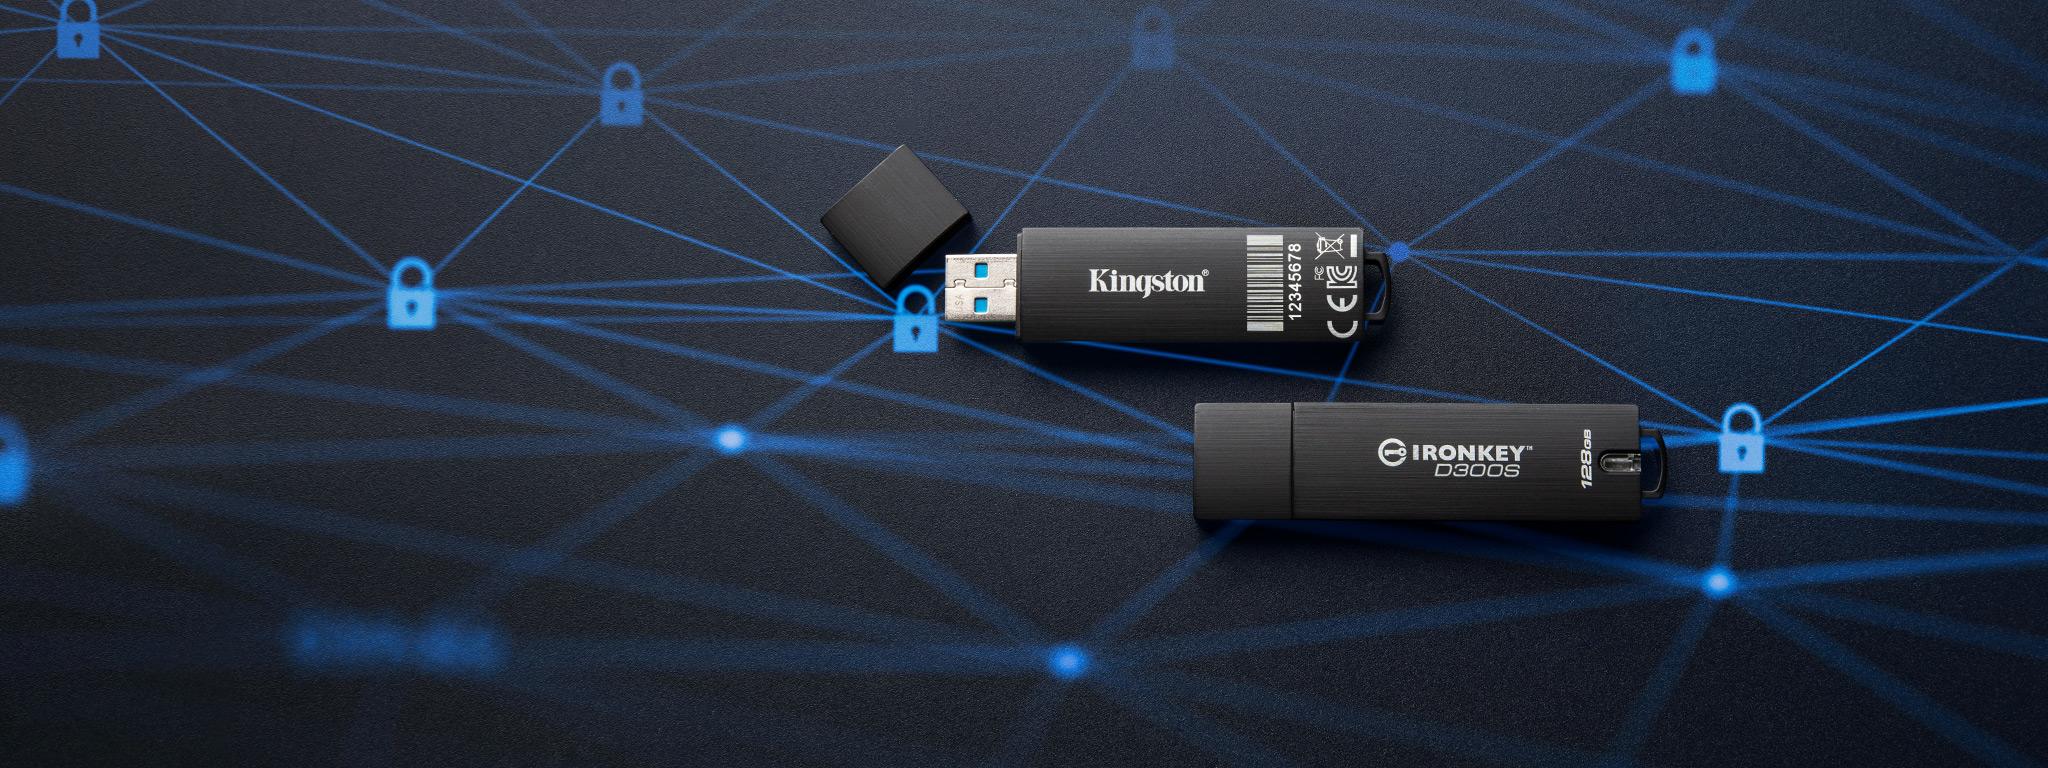 Пара USB флеш-накопичувачів IronKey D300S лежить на чорній поверхні з графічним зображенням піктограм замка синього кольору